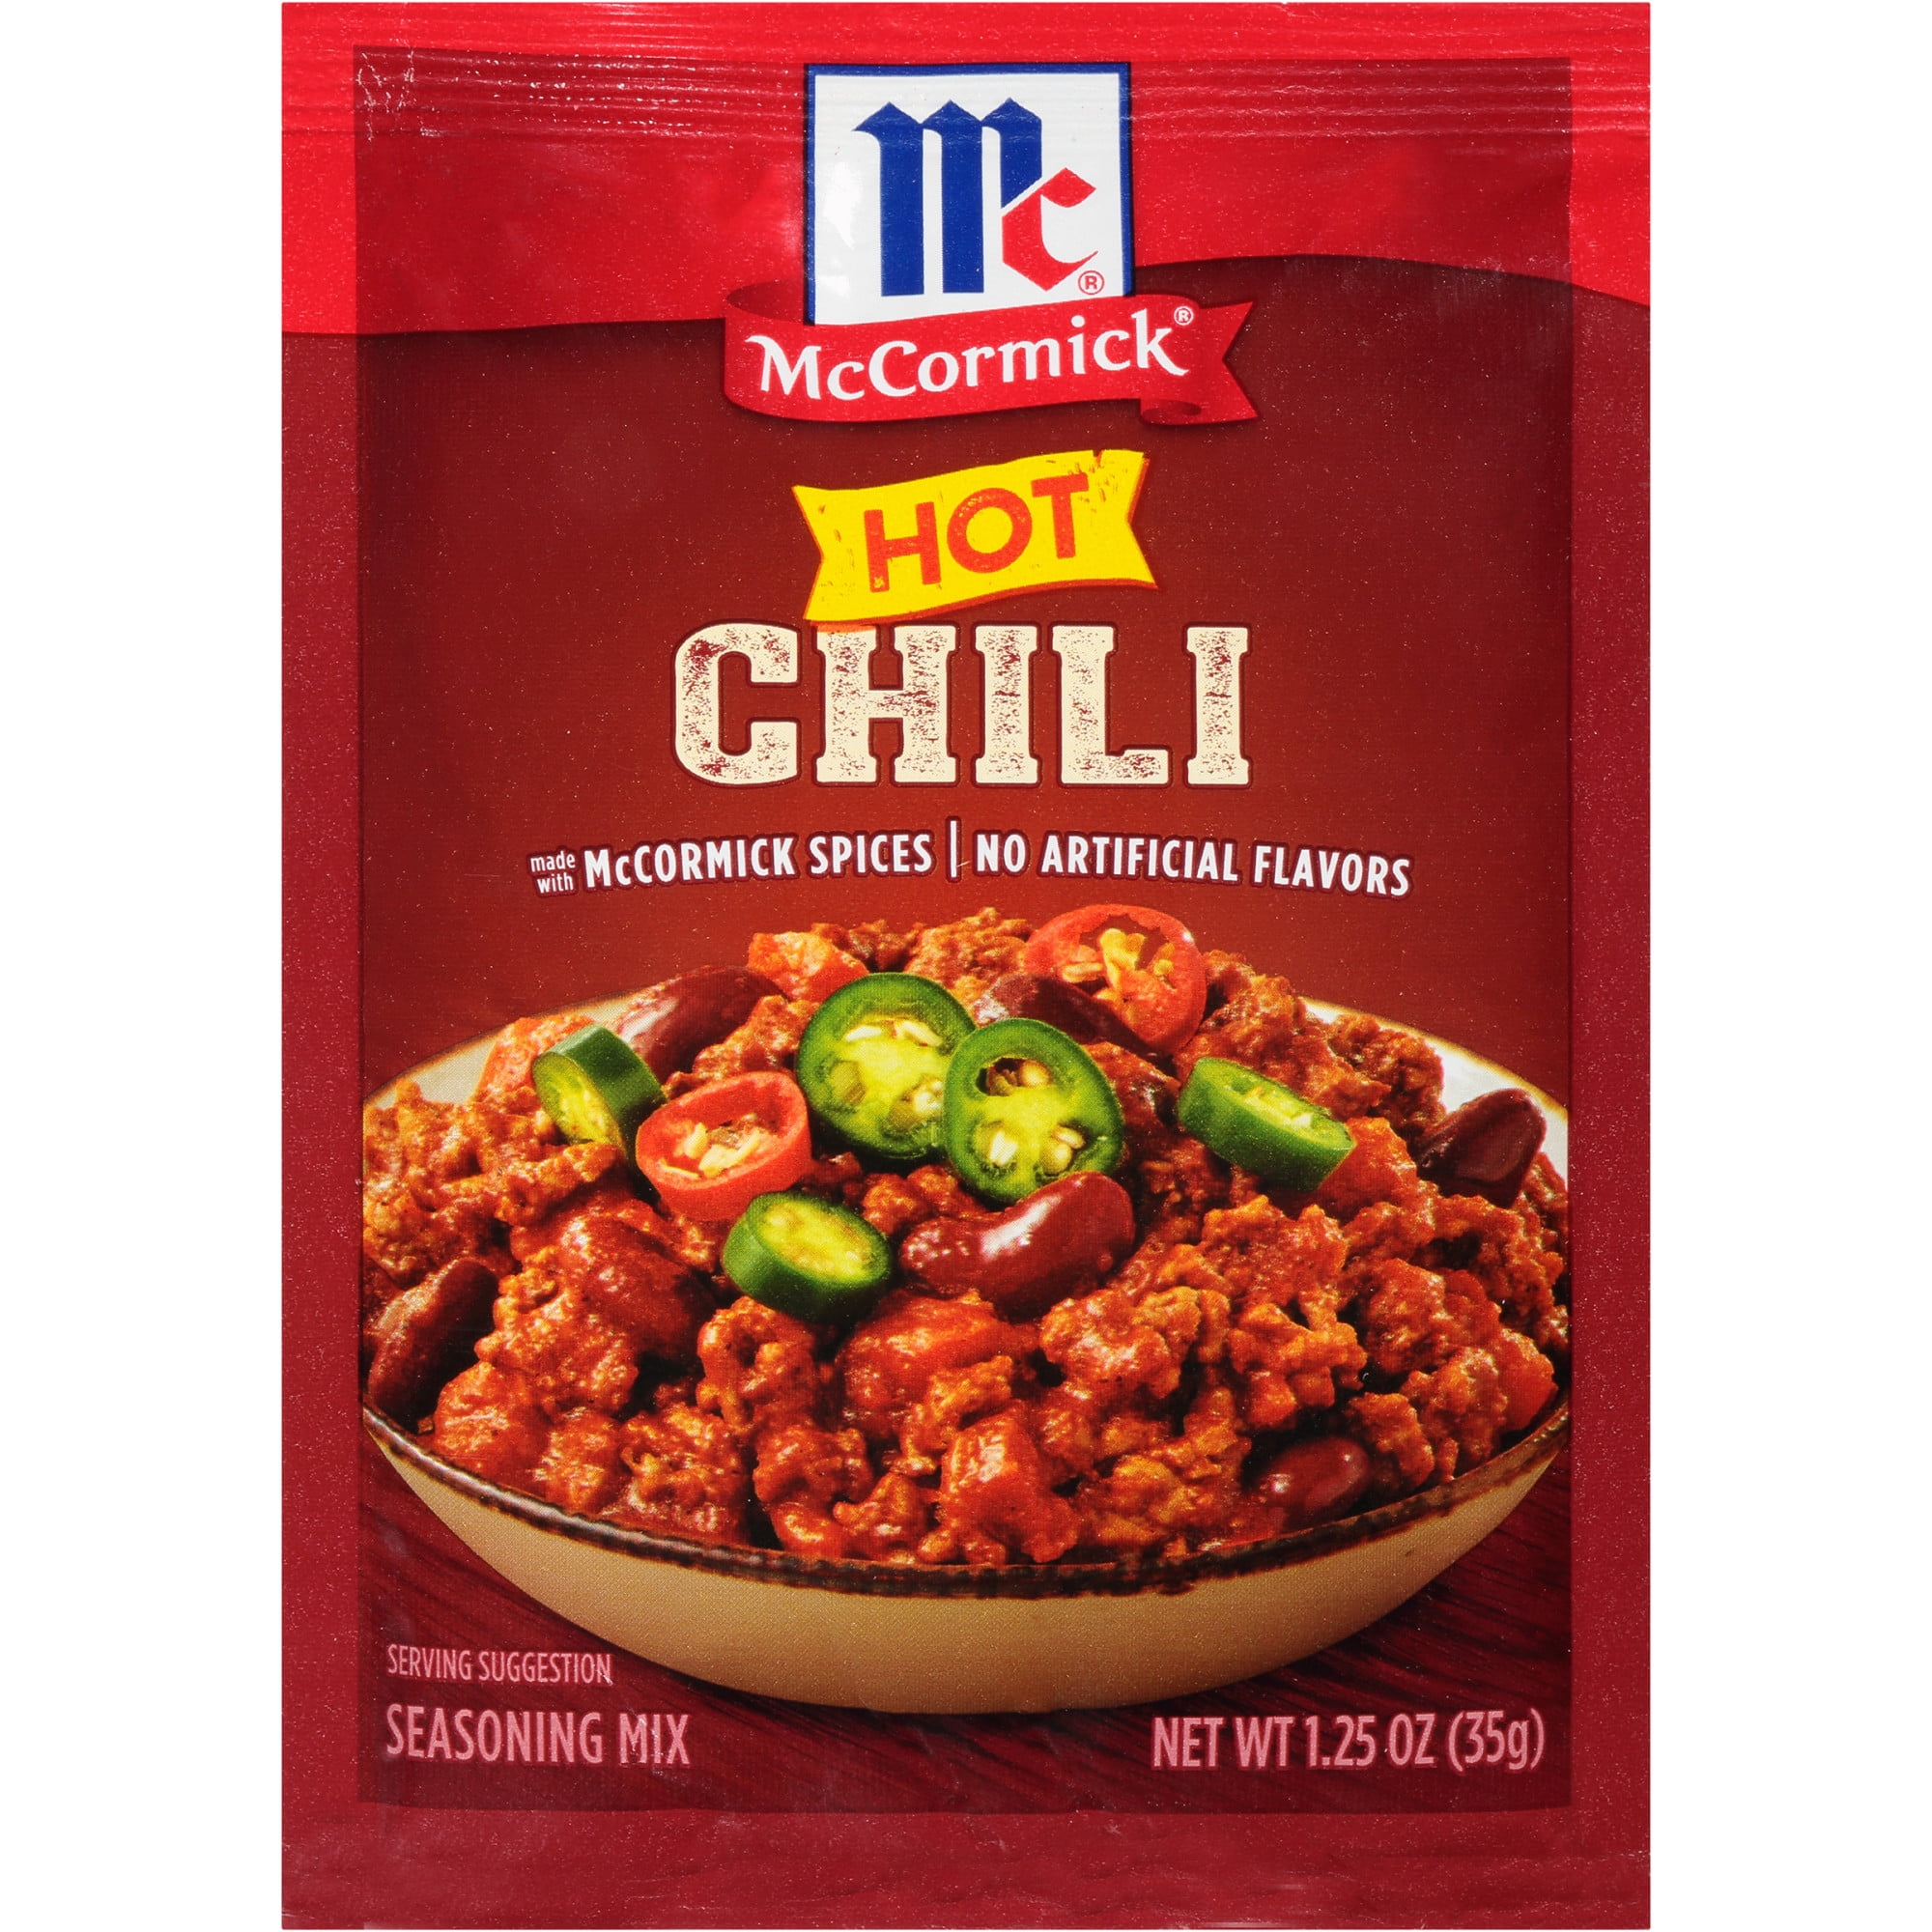 McCormick Chili Seasoning Mix - Mild, 1.25 oz